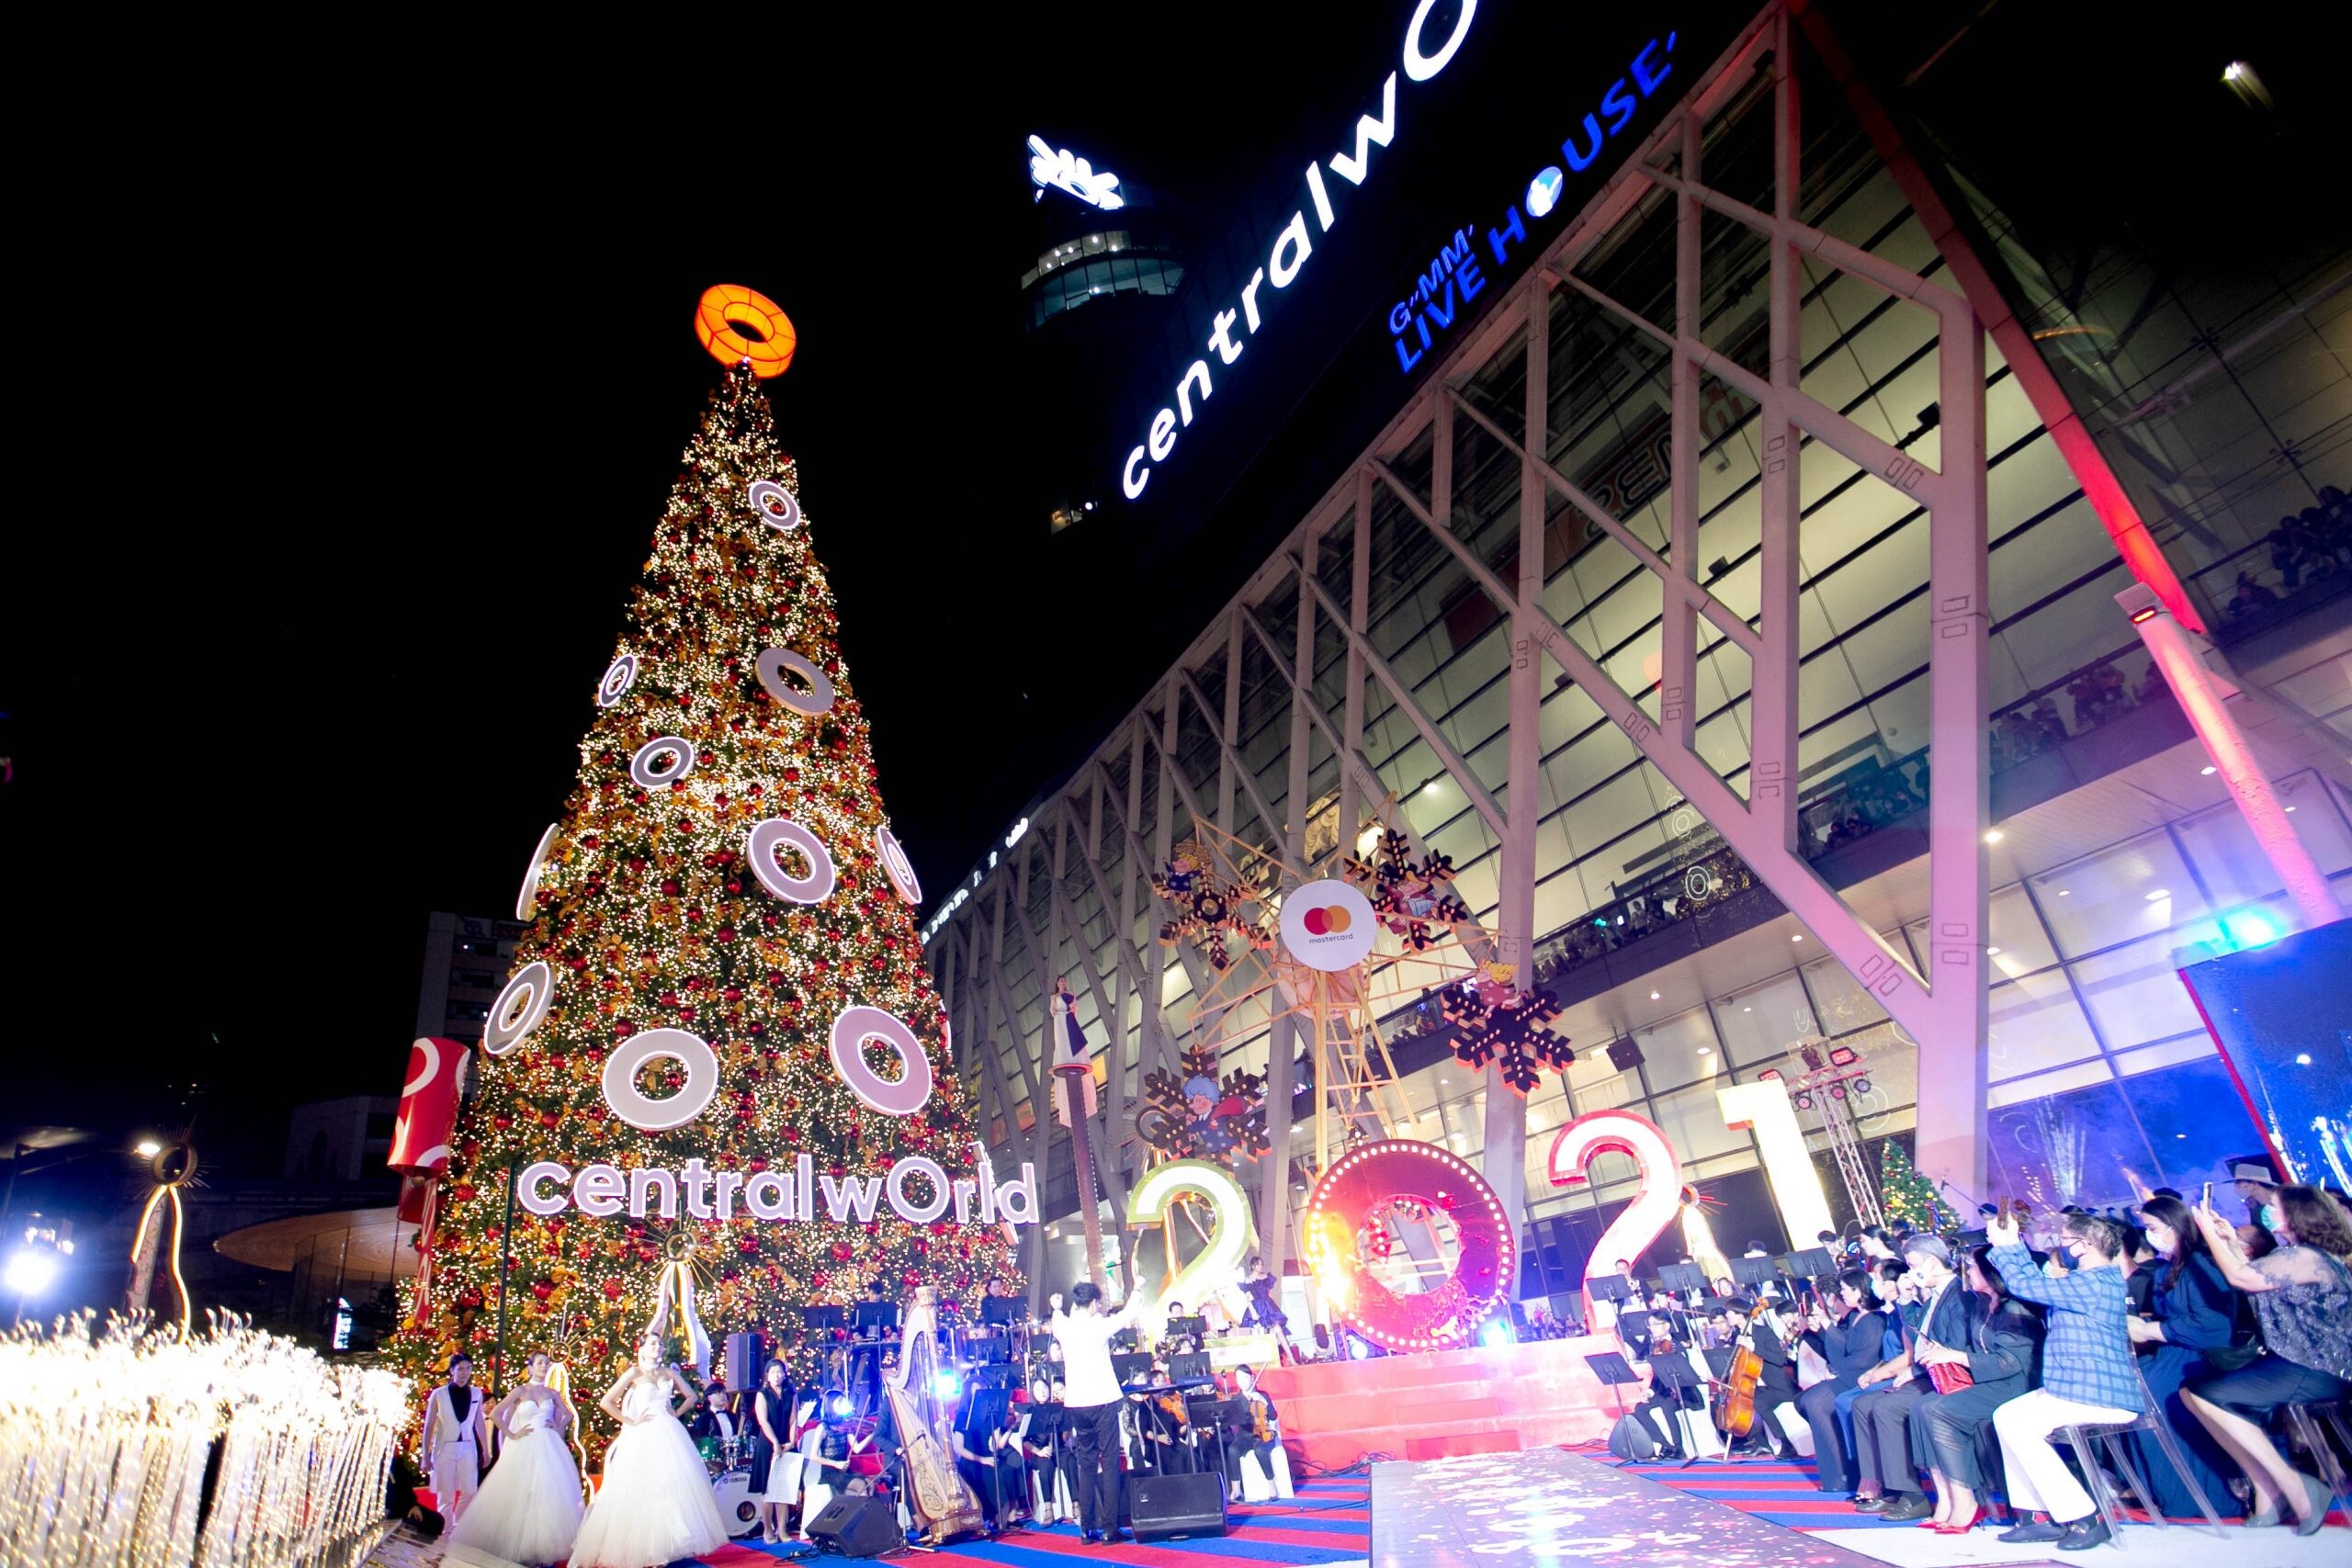 ที่สุดแห่งไฟต้นคริสต์มาสยักษ์หน้าเซ็นทรัลเวิลด์ สัญลักษณ์ของการเริ่มต้นเทศกาลฉลองความสุขแห่งเอเชีย 'wOrld Of happiness 2021 at centralwOrld'